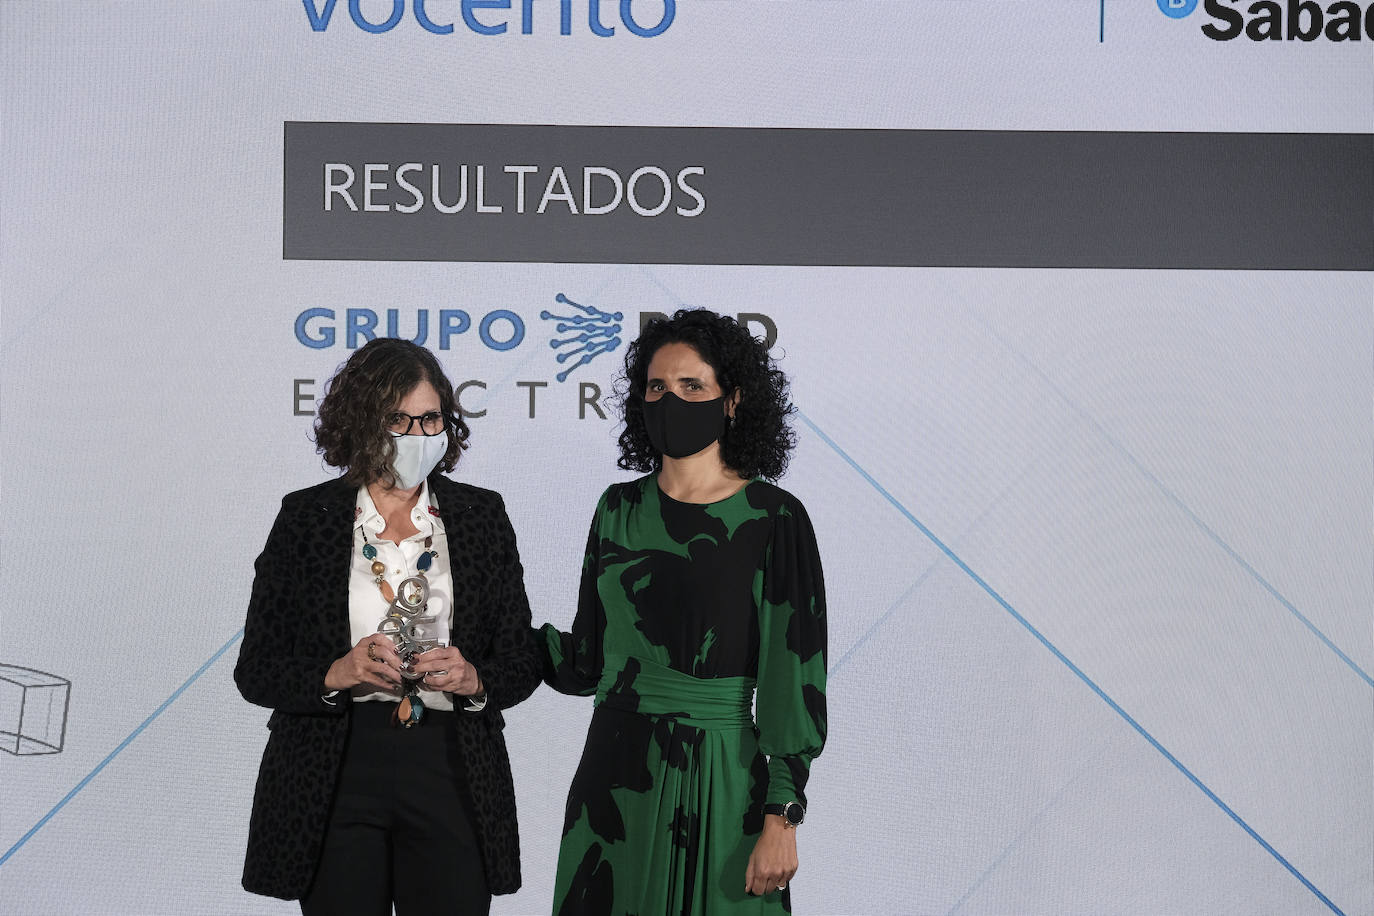 Belén Sánchez Sanjuan, directora de empresas de la dirección territorial centro de Banco Sabadell, entrega el premio a Teresa Quirós Álvarez, directora corporativa económico financiera de Grupo Red Eléctrica.